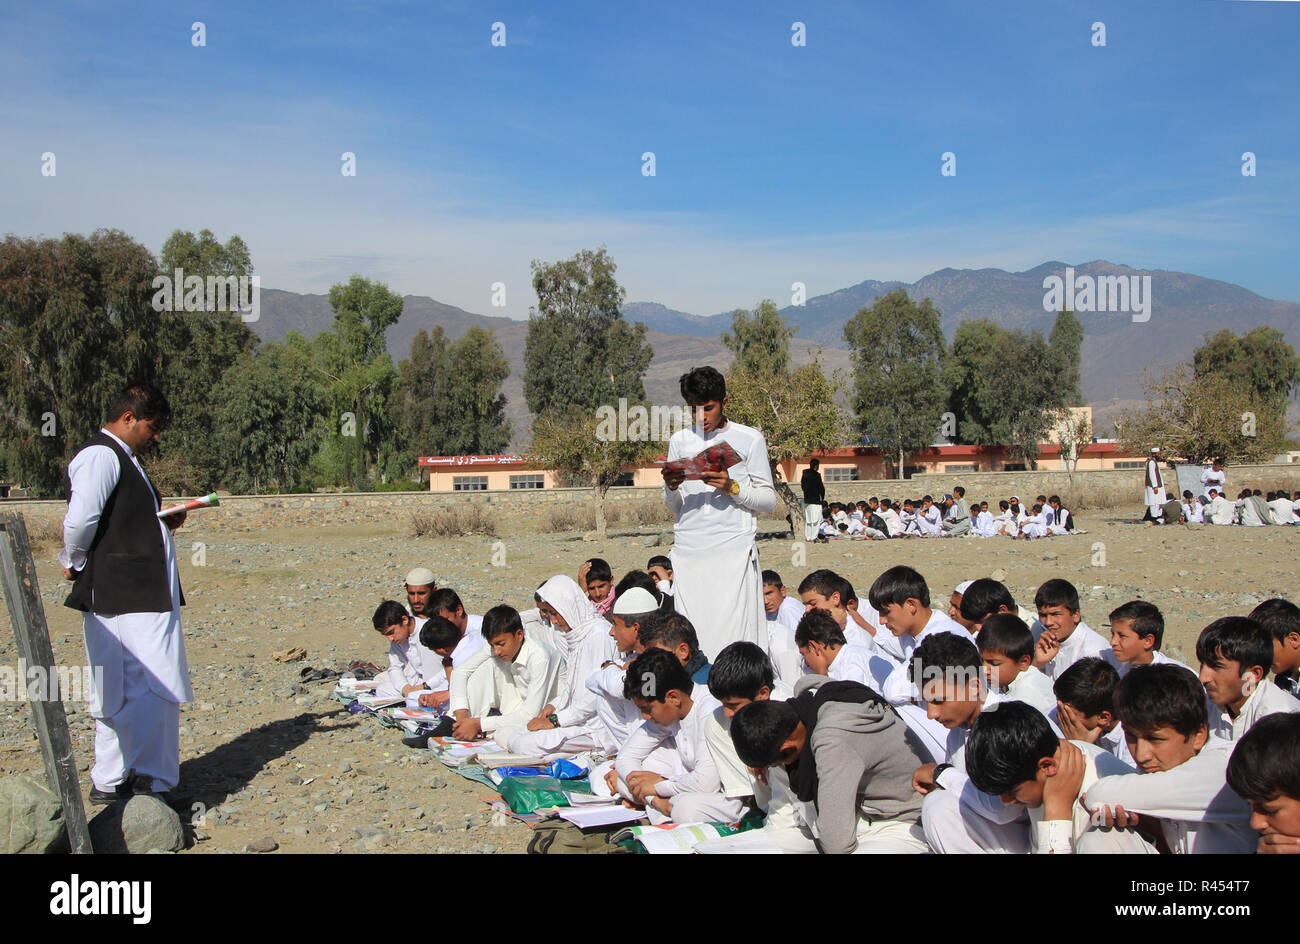 Asadabad, Afghanistan. 24 Novembre, 2018. Afghan agli studenti di frequentare un corso presso una scuola locale in Khas Kunar distretto di Kunar provincia orientale dell'Afghanistan, nov. 24, 2018. Circa 9 milioni di bambini afgani con circa il 40 per cento di essi sono le ragazze che frequentano la scuola regolarmente. Come gruppi armati, inclusi i talebani e Stato islamico (SI) abiti sono attivi, centinaia di scuole hanno riferito è rimasto chiuso, soprattutto nelle campagne. Credito: Emran Waak/Xinhua/Alamy Live News Foto Stock